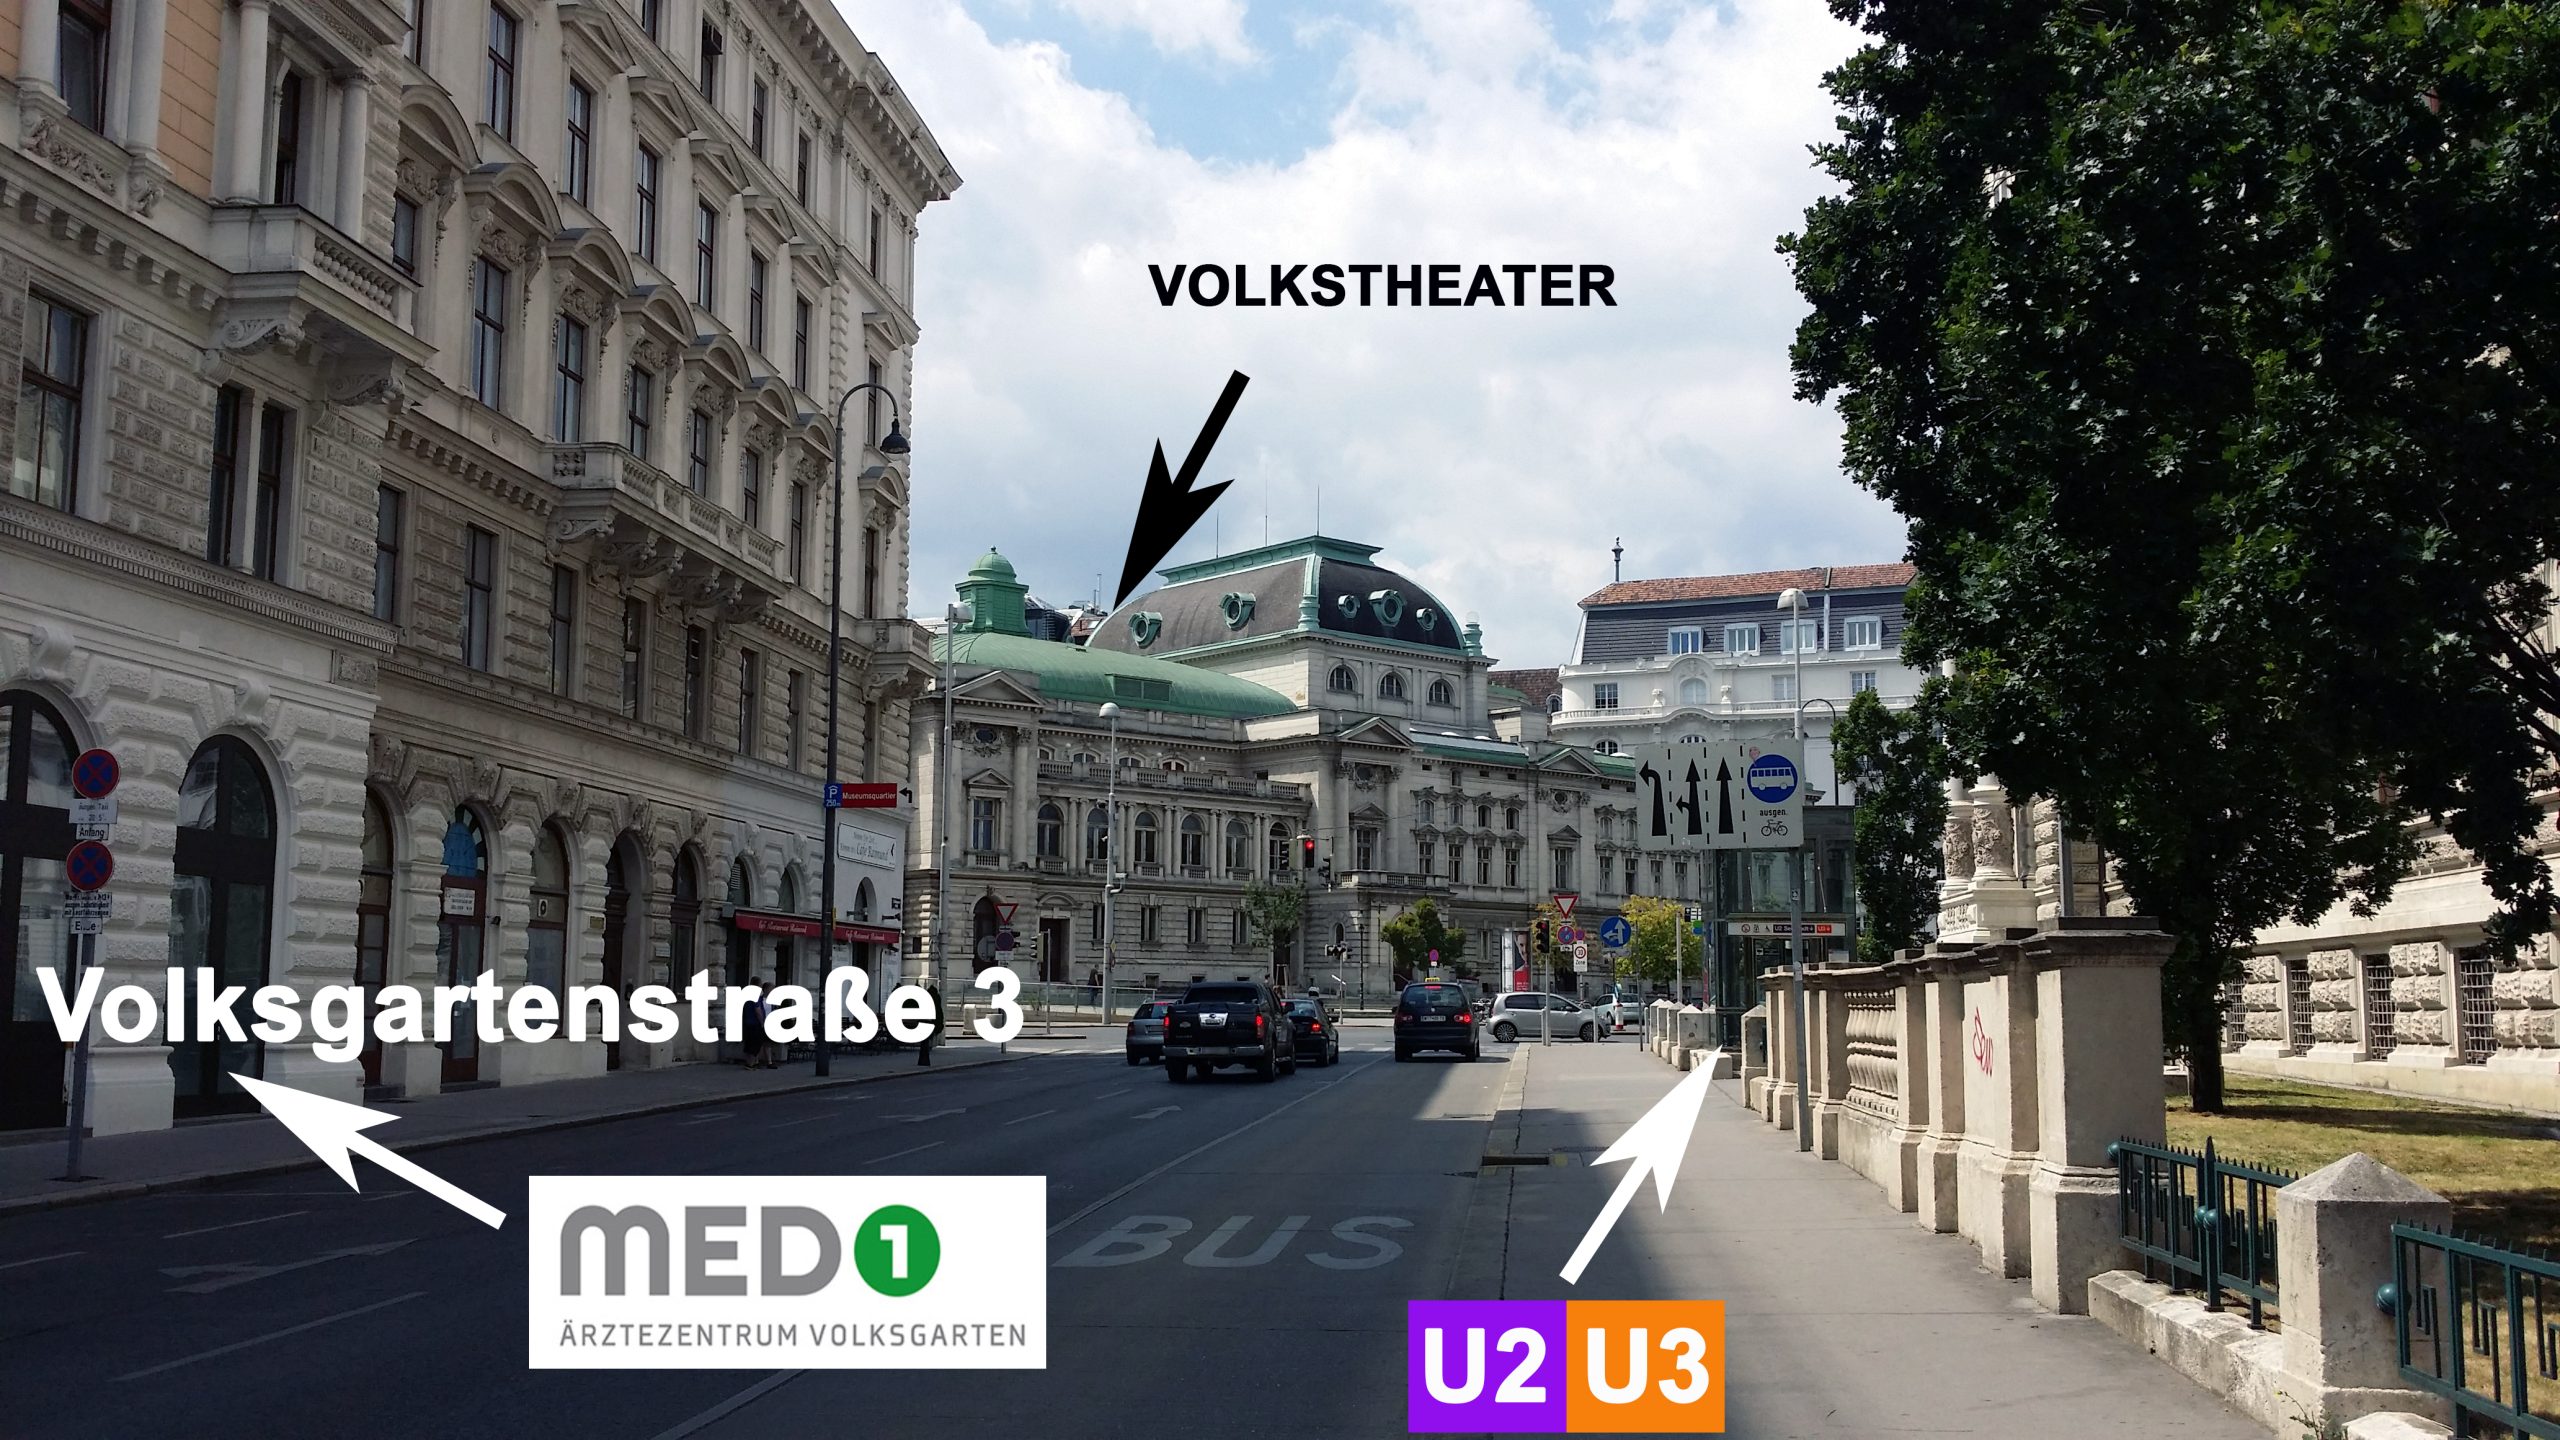 Ein Blick von Außen auf die Volksgartenstraße 3/2 in 1010 Wien gegenüber von der Ordination Univ. Prof. Dr. Fahmy Aboulenein-Djamshidian. Der Betrachter sieht Richtung Volkstheater. Am Eck gegenüber ist das Cafe Raimund zu sehen. Pfeile zeigen die Ordination MED-1 Ärztezentrum Volksgarten, den U-Bahn Ausgang der U2 und U3 der U-Bahnstation Volkstheater und das Volkstheater.